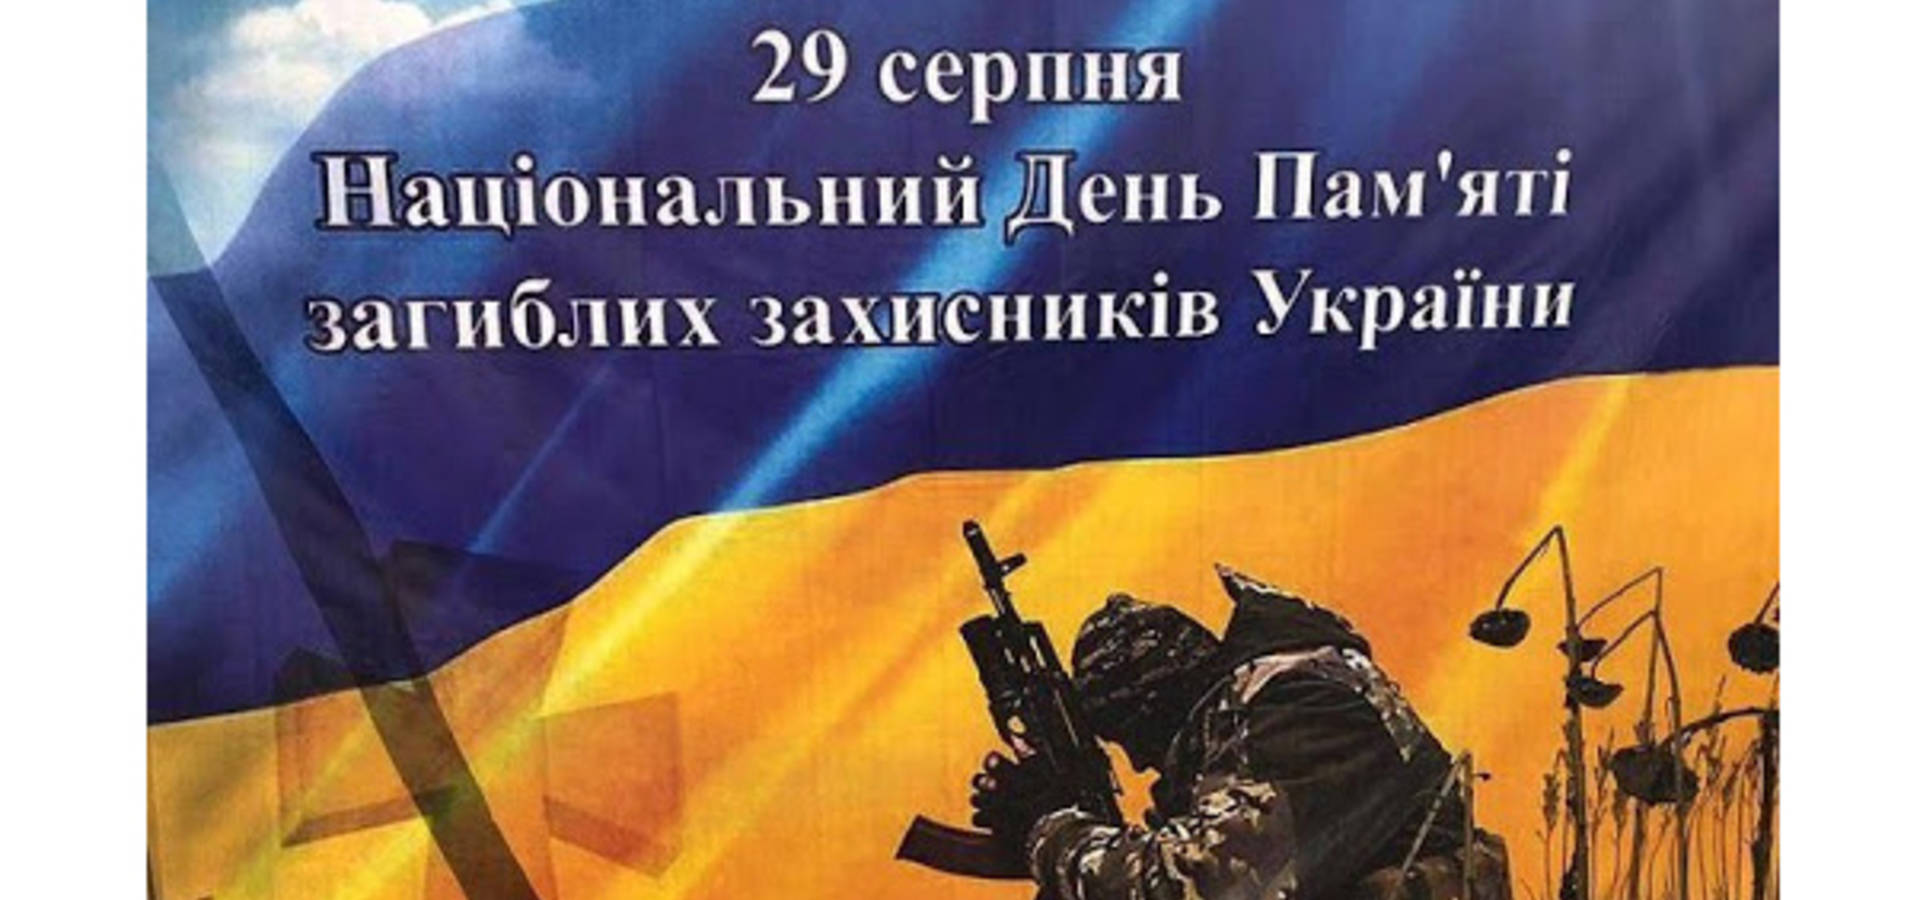 На Вінниччині вшанують захисників України  